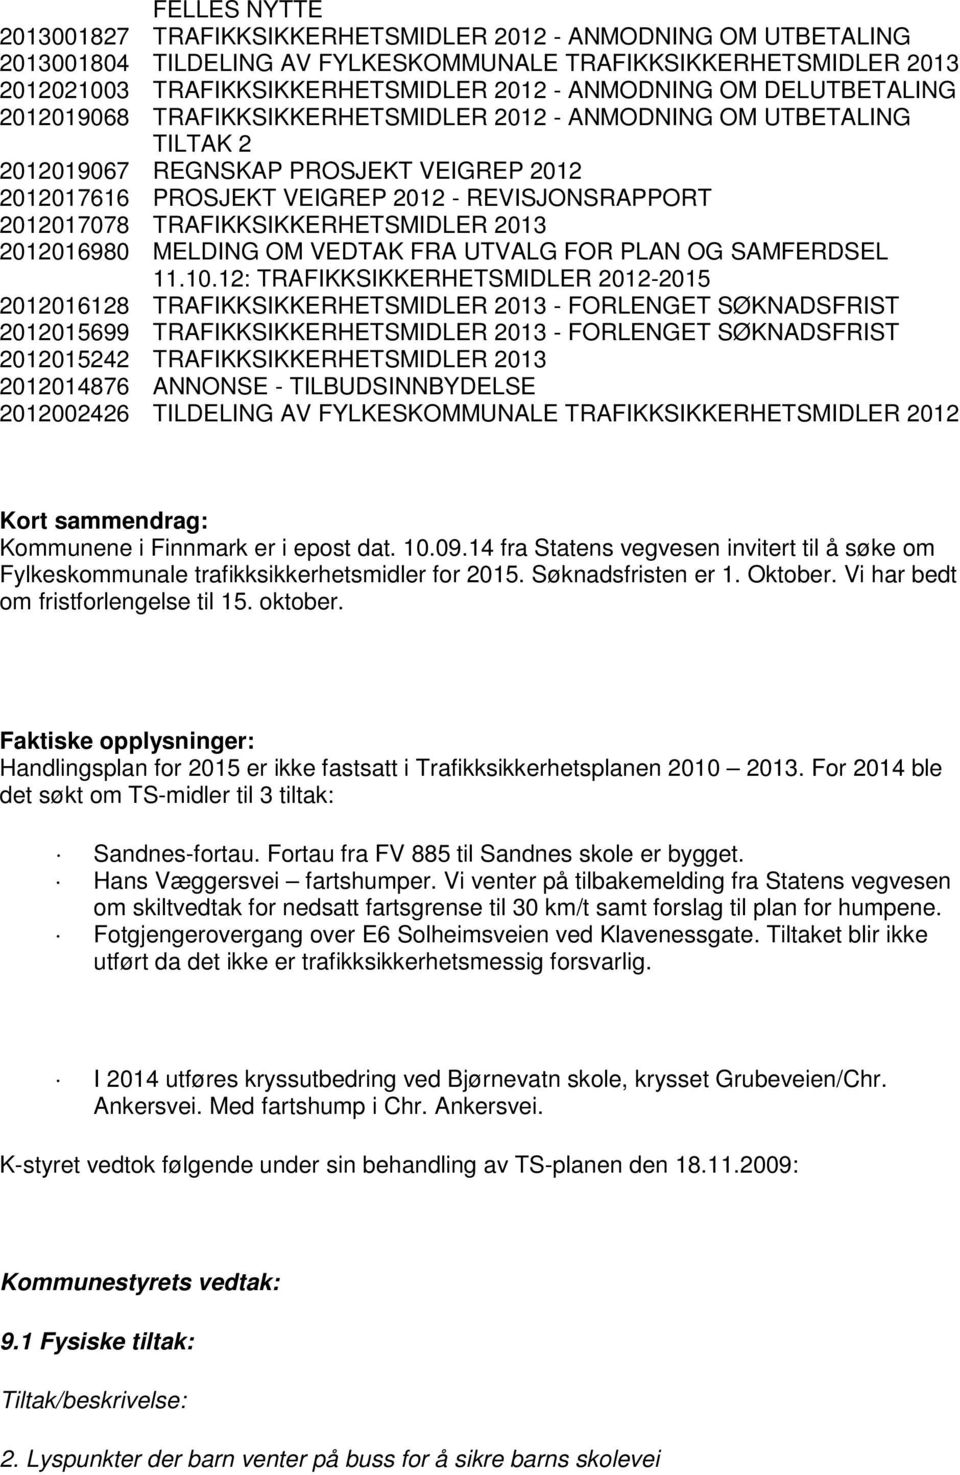 TRAFIKKSIKKERHETSMIDLER 2013 2012016980 MELDING OM VEDTAK FRA UTVALG FOR PLAN OG SAMFERDSEL 11.10.